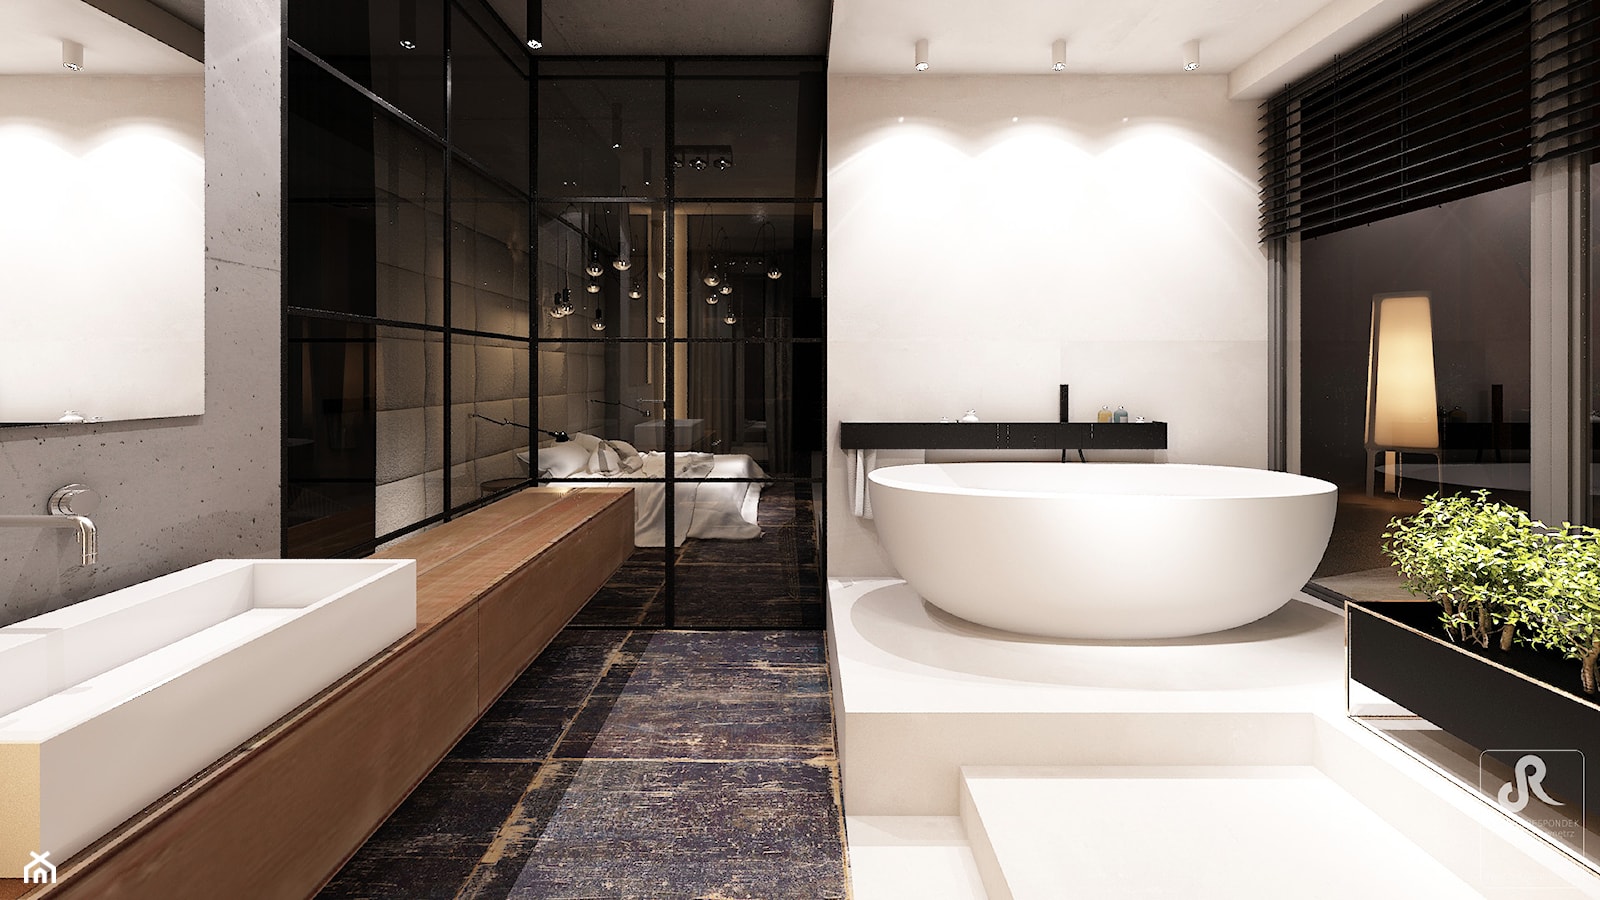 DRAFT WOOD - Duża jako pokój kąpielowy z punktowym oświetleniem łazienka z oknem, styl industrialny - zdjęcie od Otwarte Studio Sztuka - Homebook